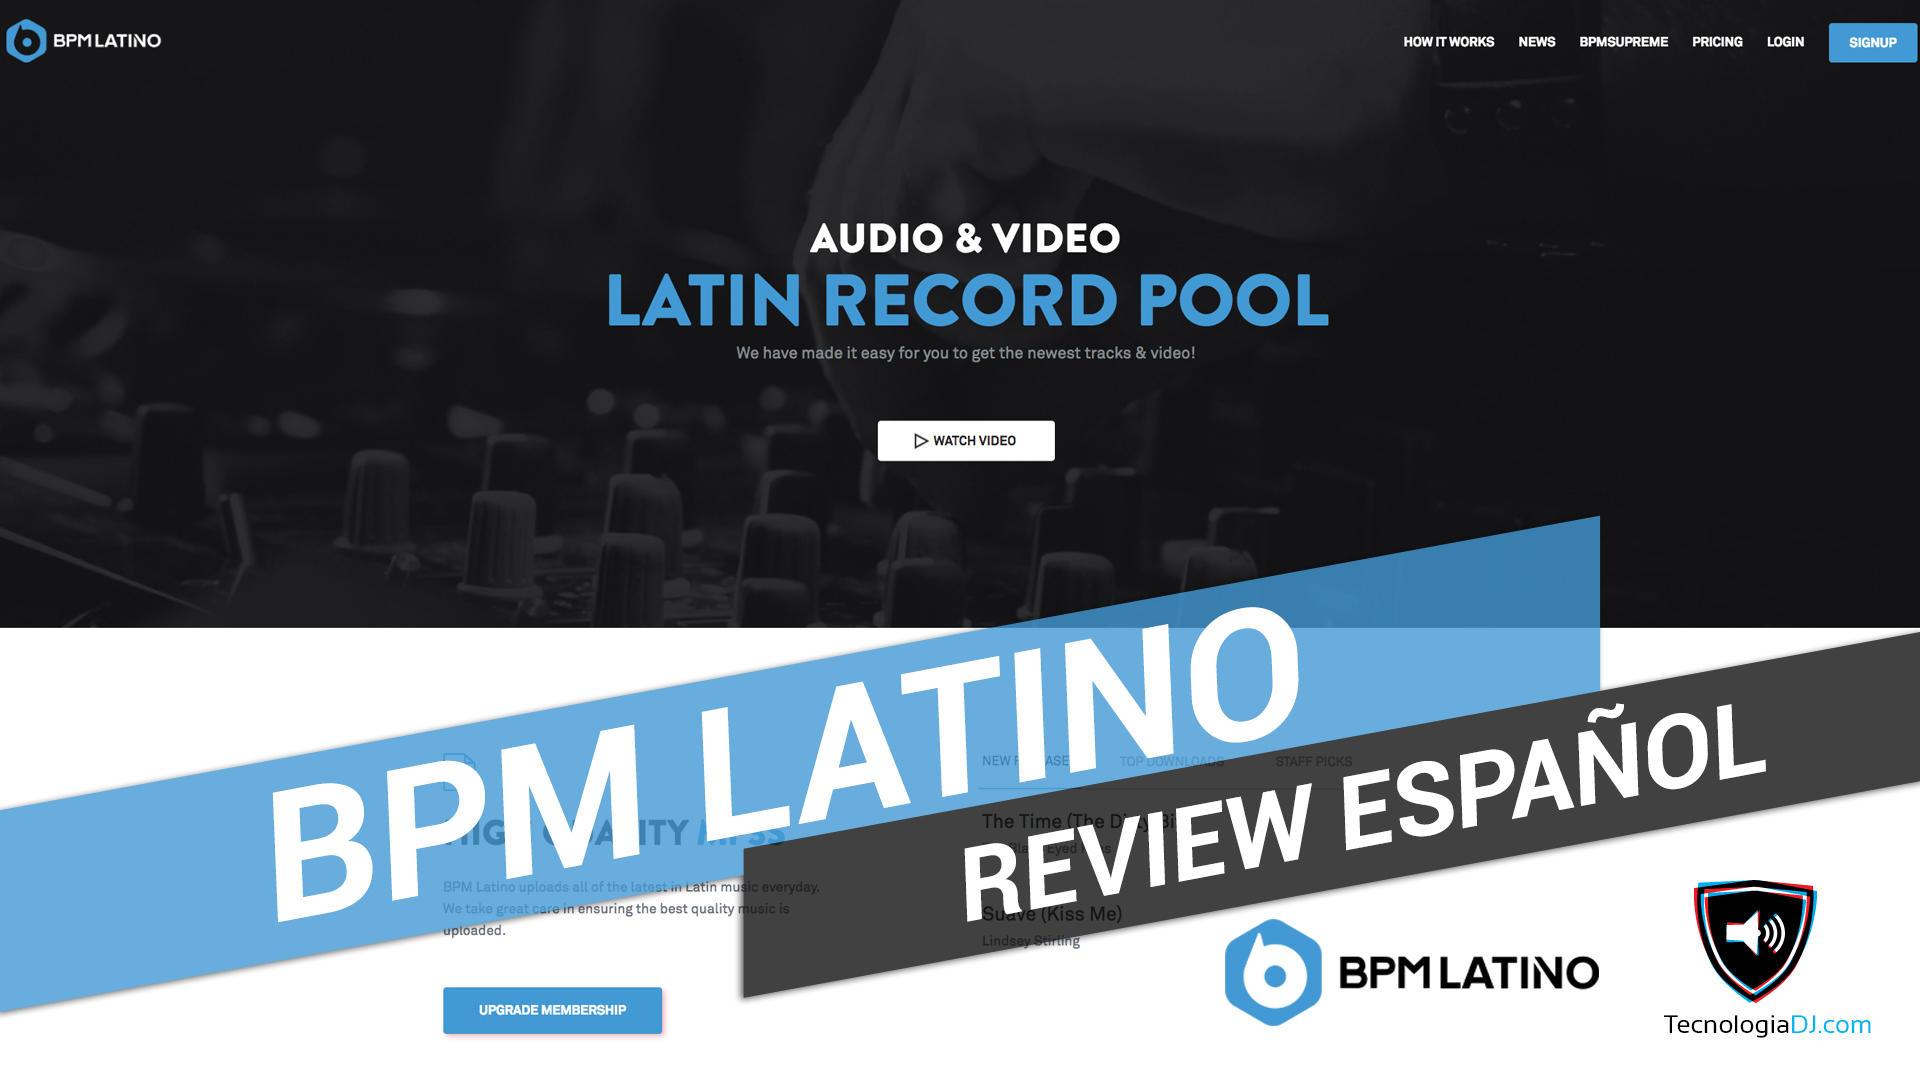 Review en español record pool BPM Latino